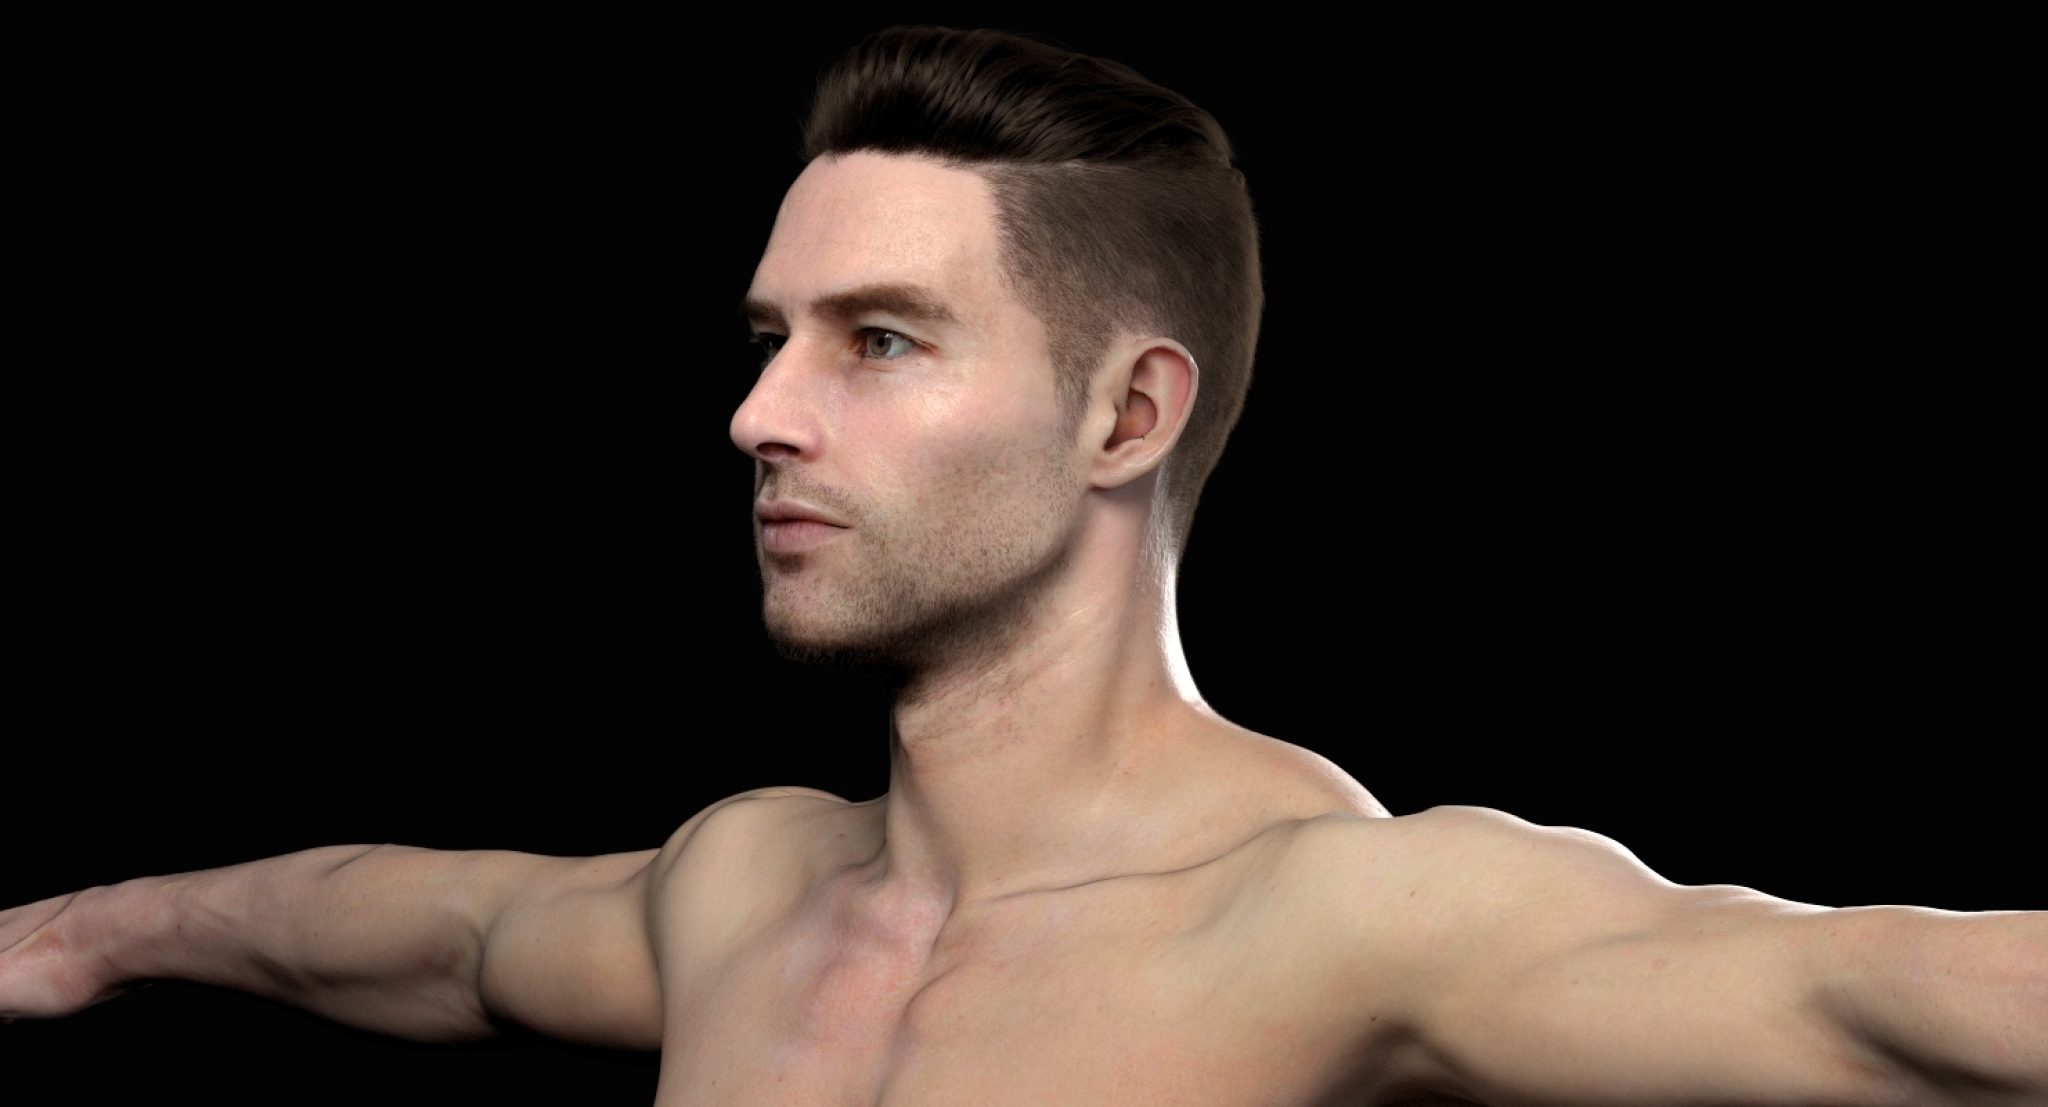 blender 3d male models free download